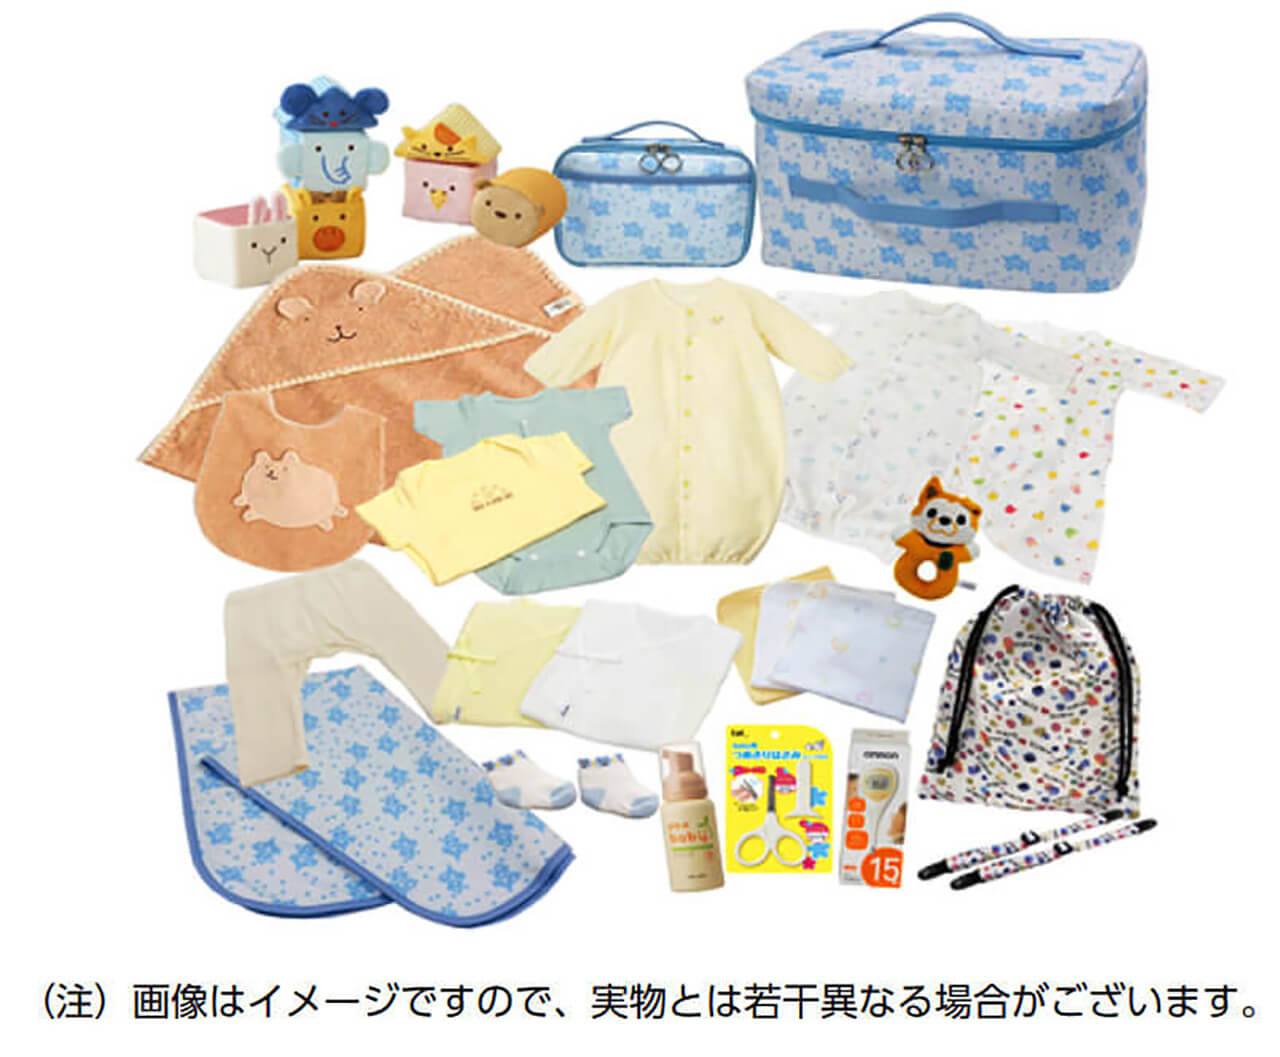 渋谷区から送られる育児パッケージのイメージ図